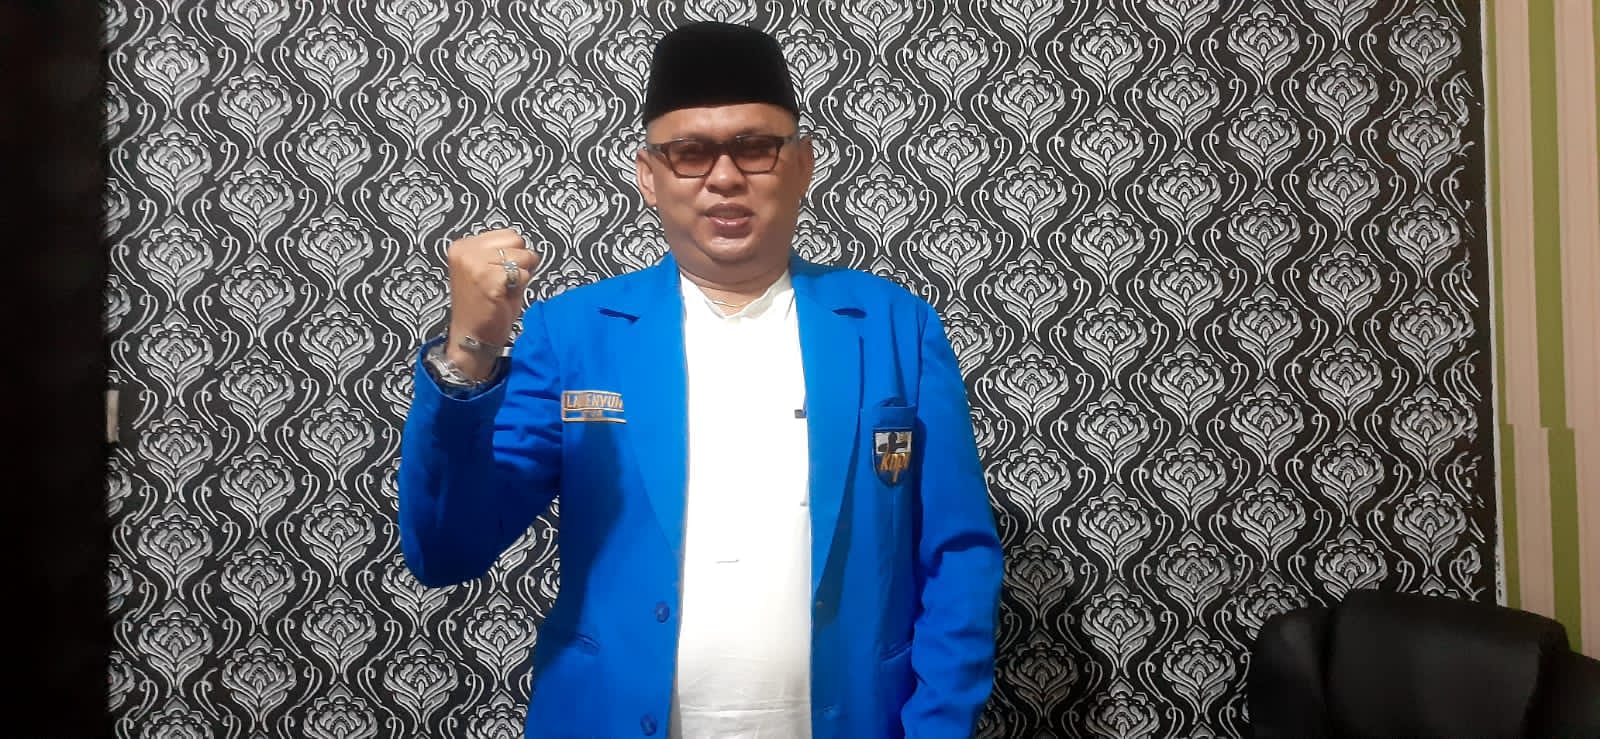 Arogansi Ali Mukhtar Ngabalin Buat Wajah Istana Tercoreng, KNPI: Segera Copot!